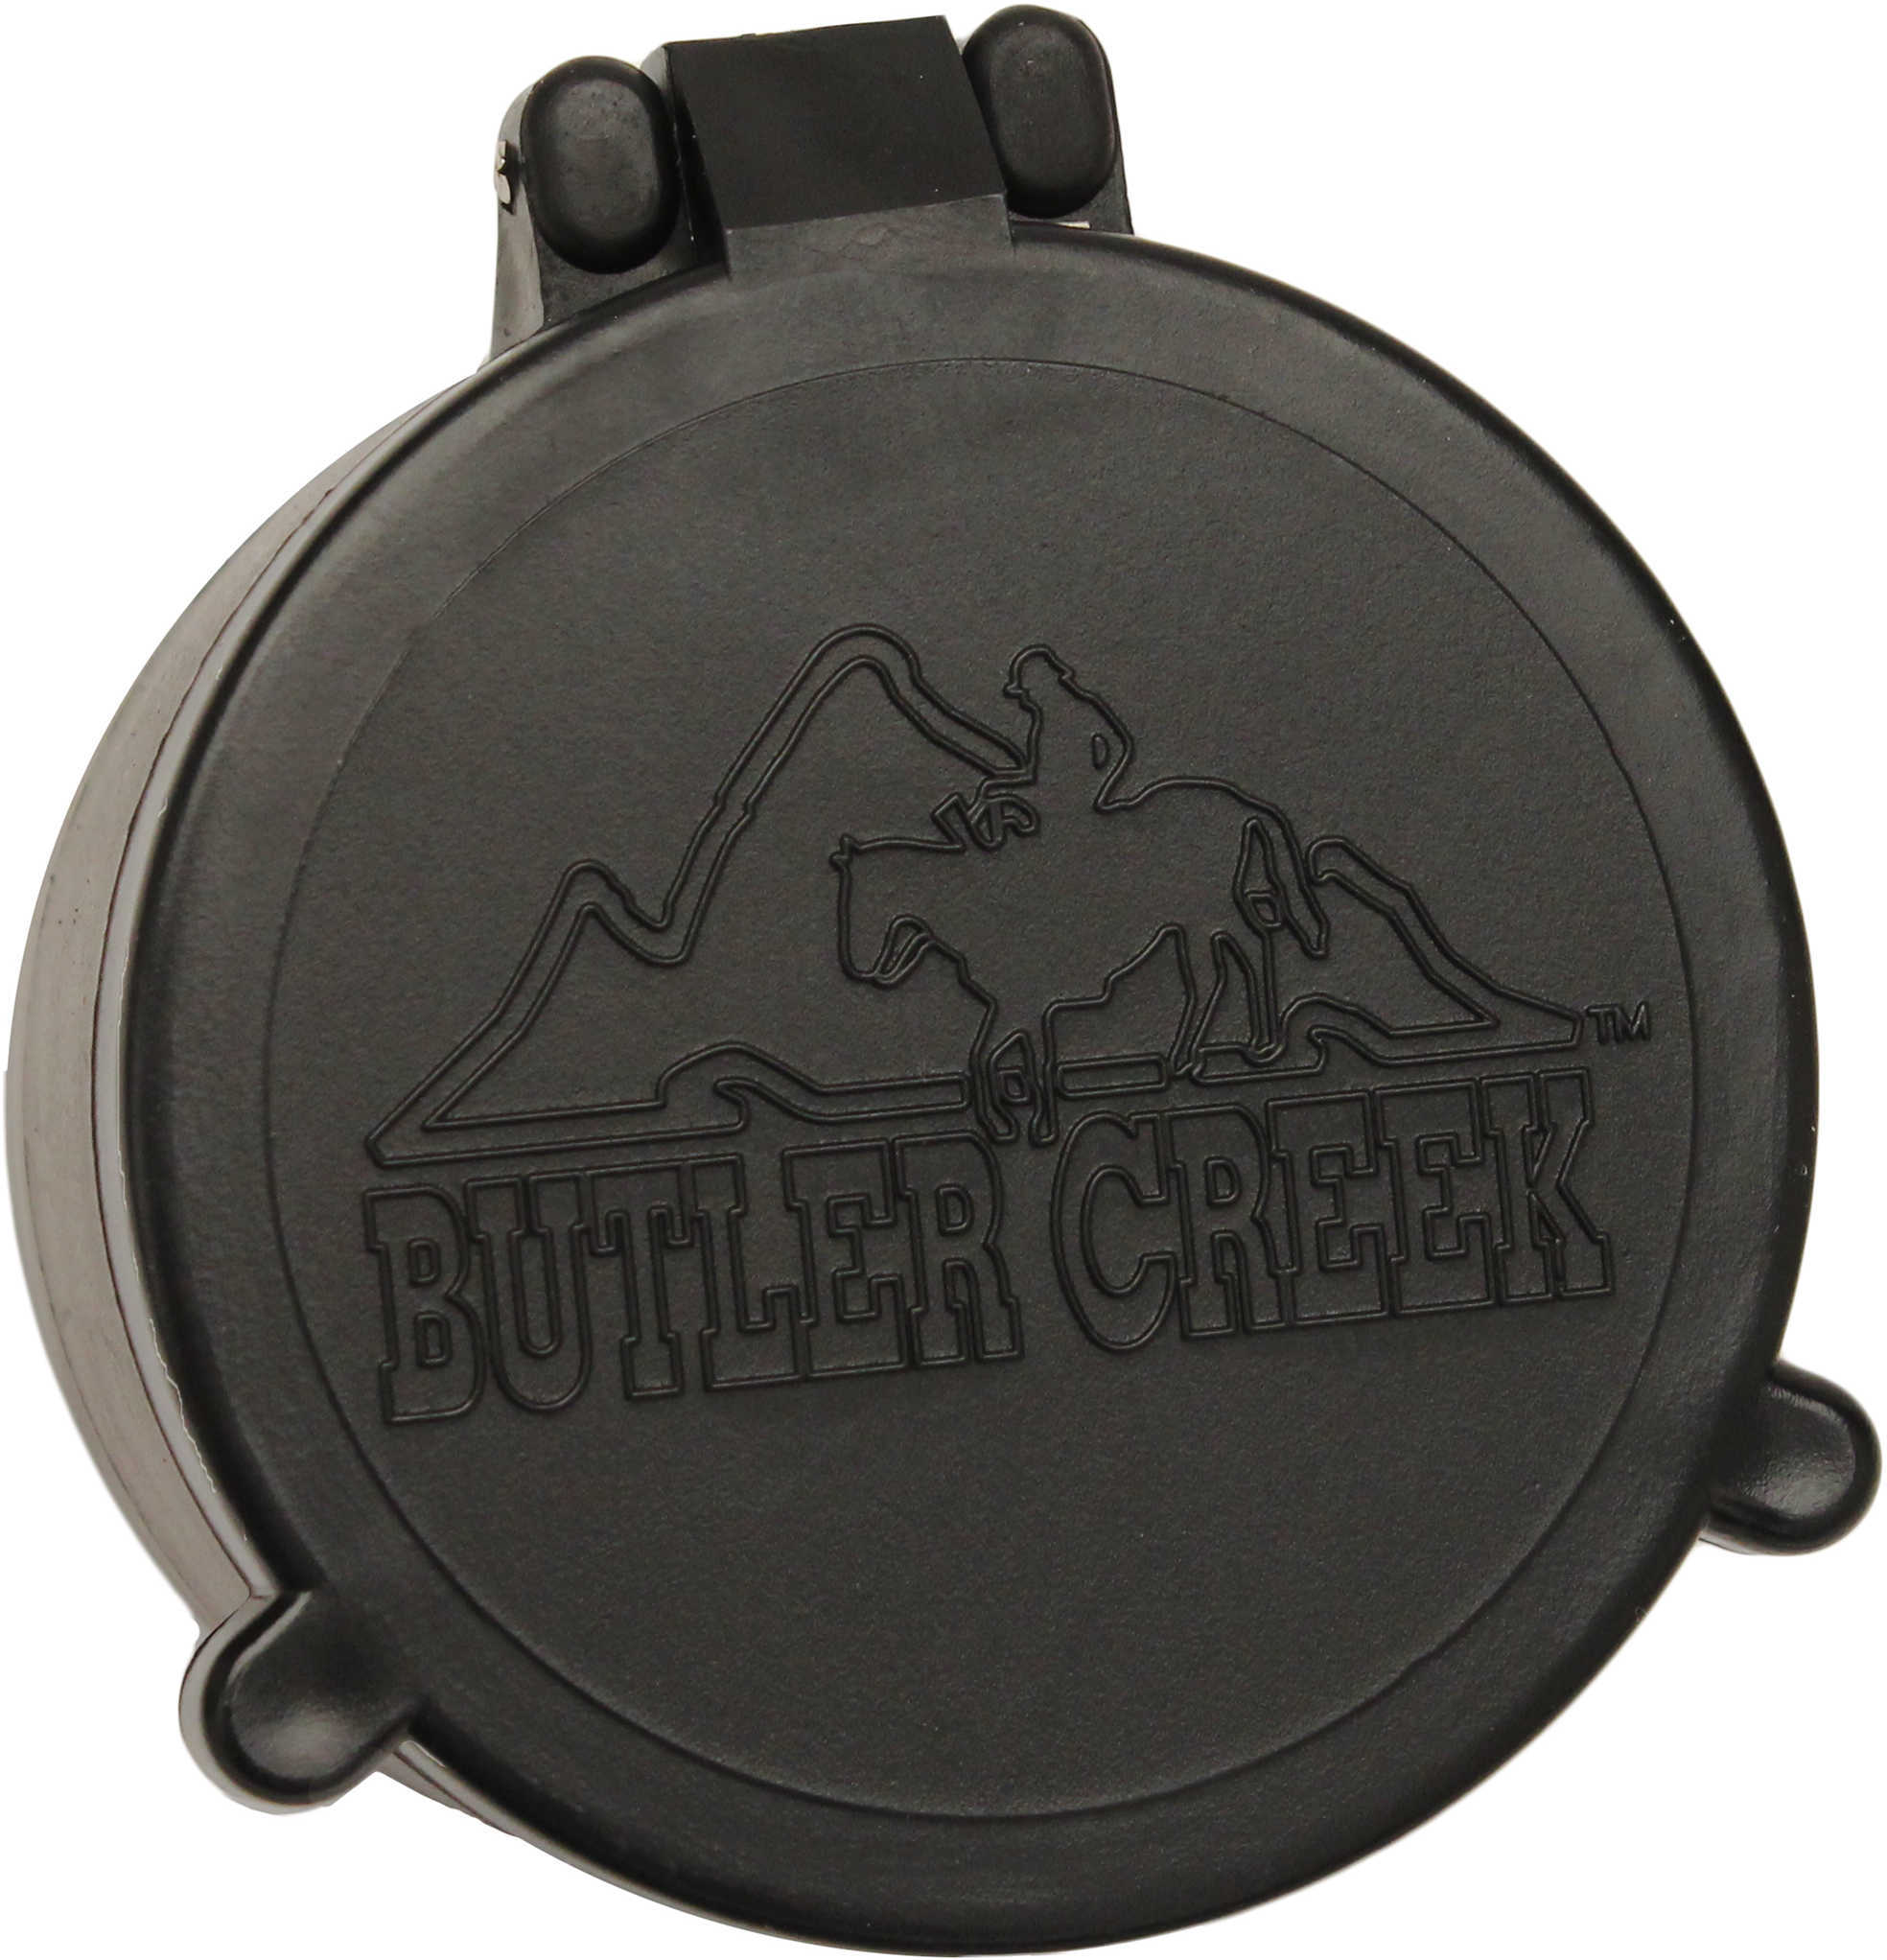 Butler Creek 30035 Flip-Open Scope Cover Objective Lens 34.00mm Slip On Polymer Black